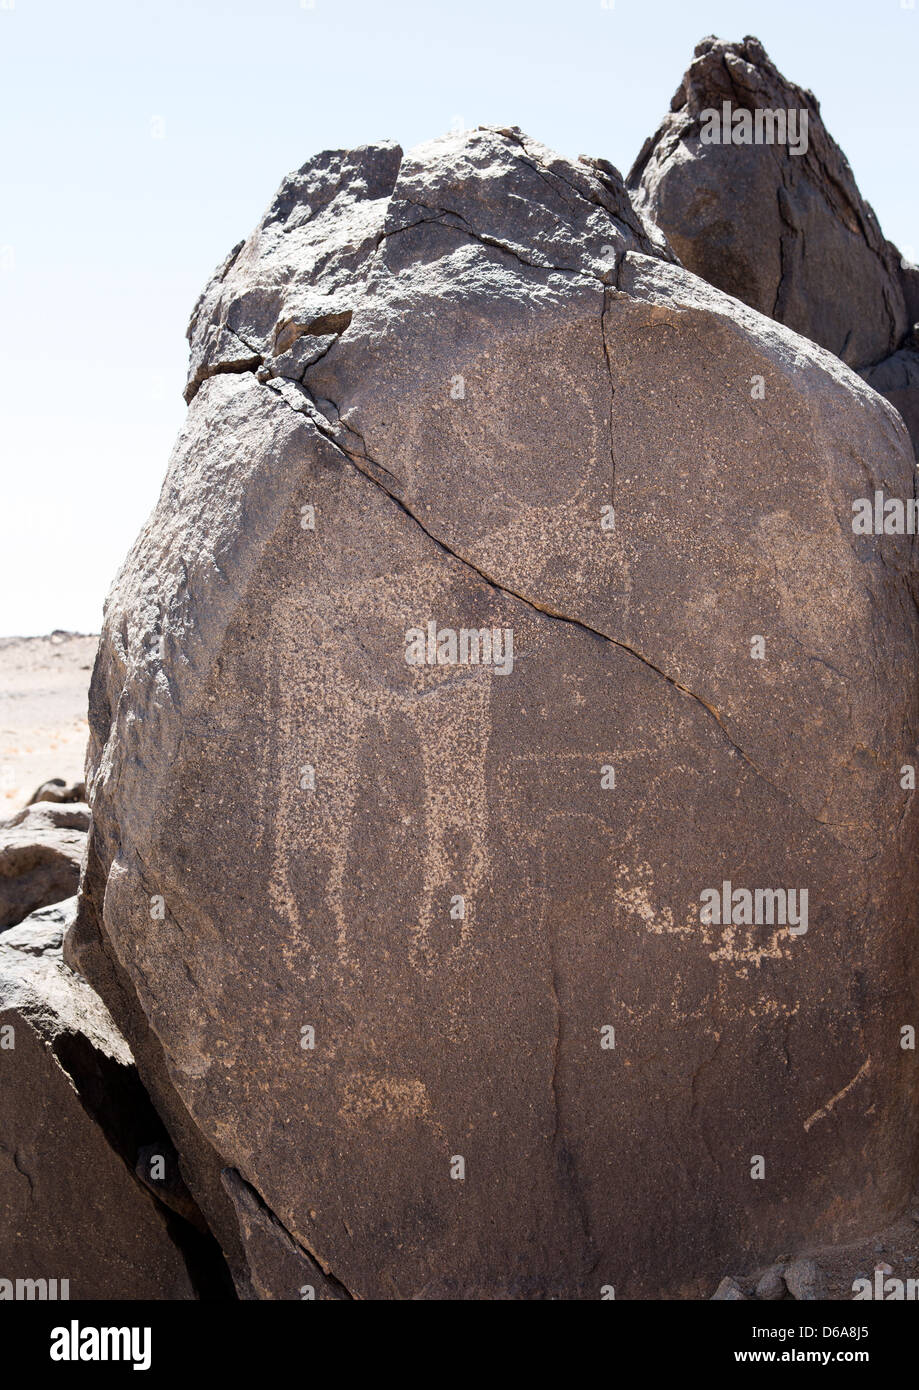 Rock Art In The Desert, Nuri, Sudan Stock Photo